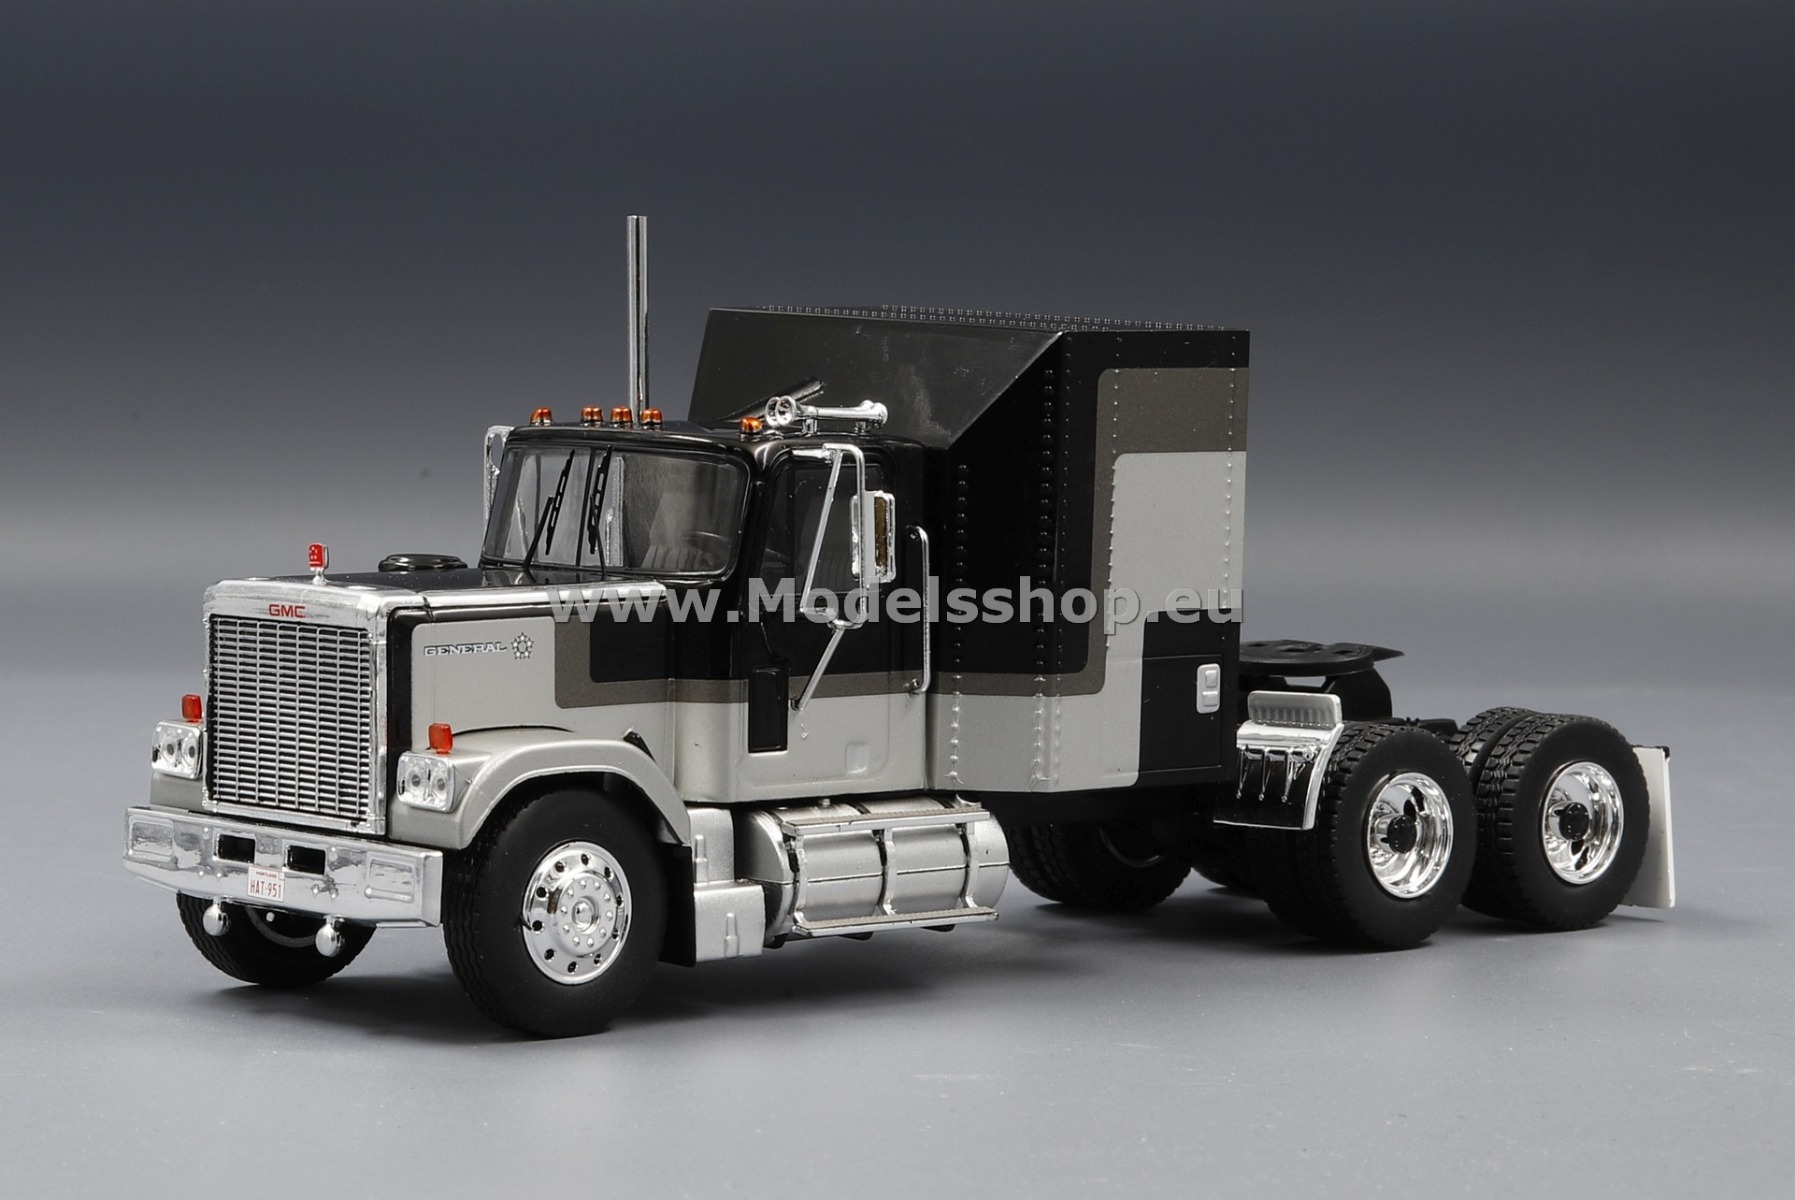 IXO TR117 GMC General tractor truck, 1980 /black - silver/